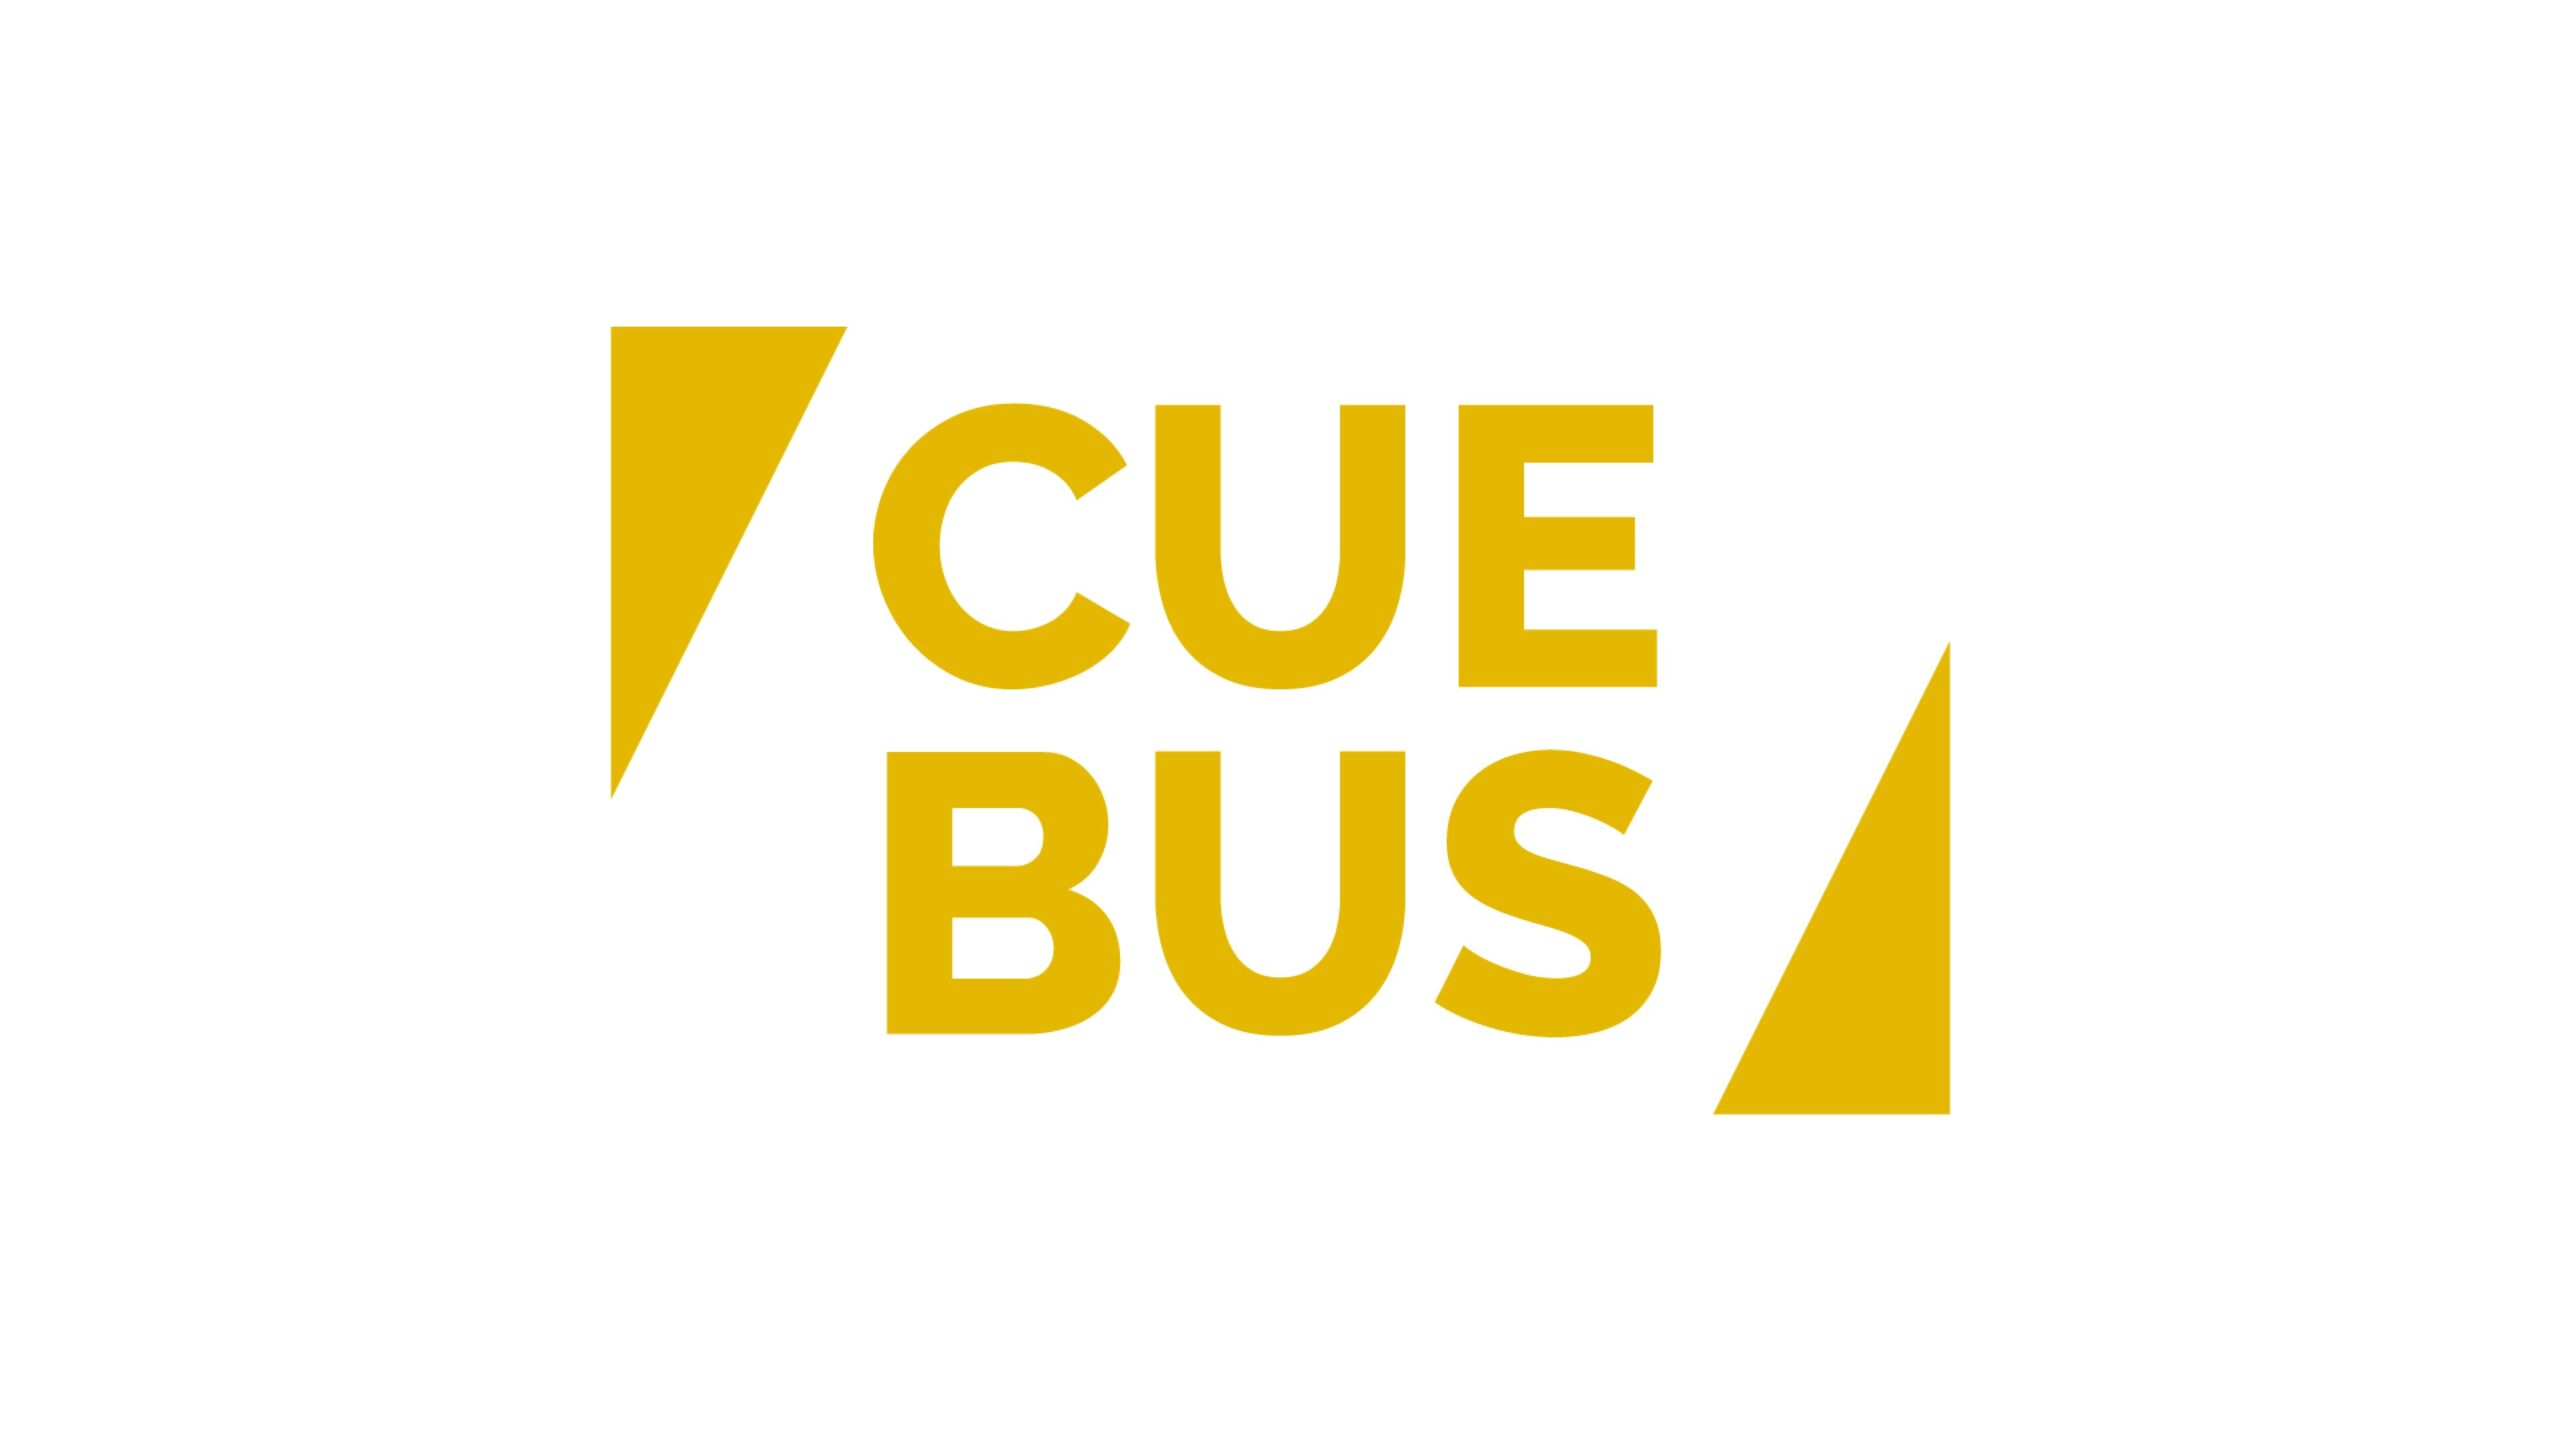 都市型立体ロボット倉庫「CUEBUS」を提供するCuebus株式会社がシリーズBで資金調達を実施